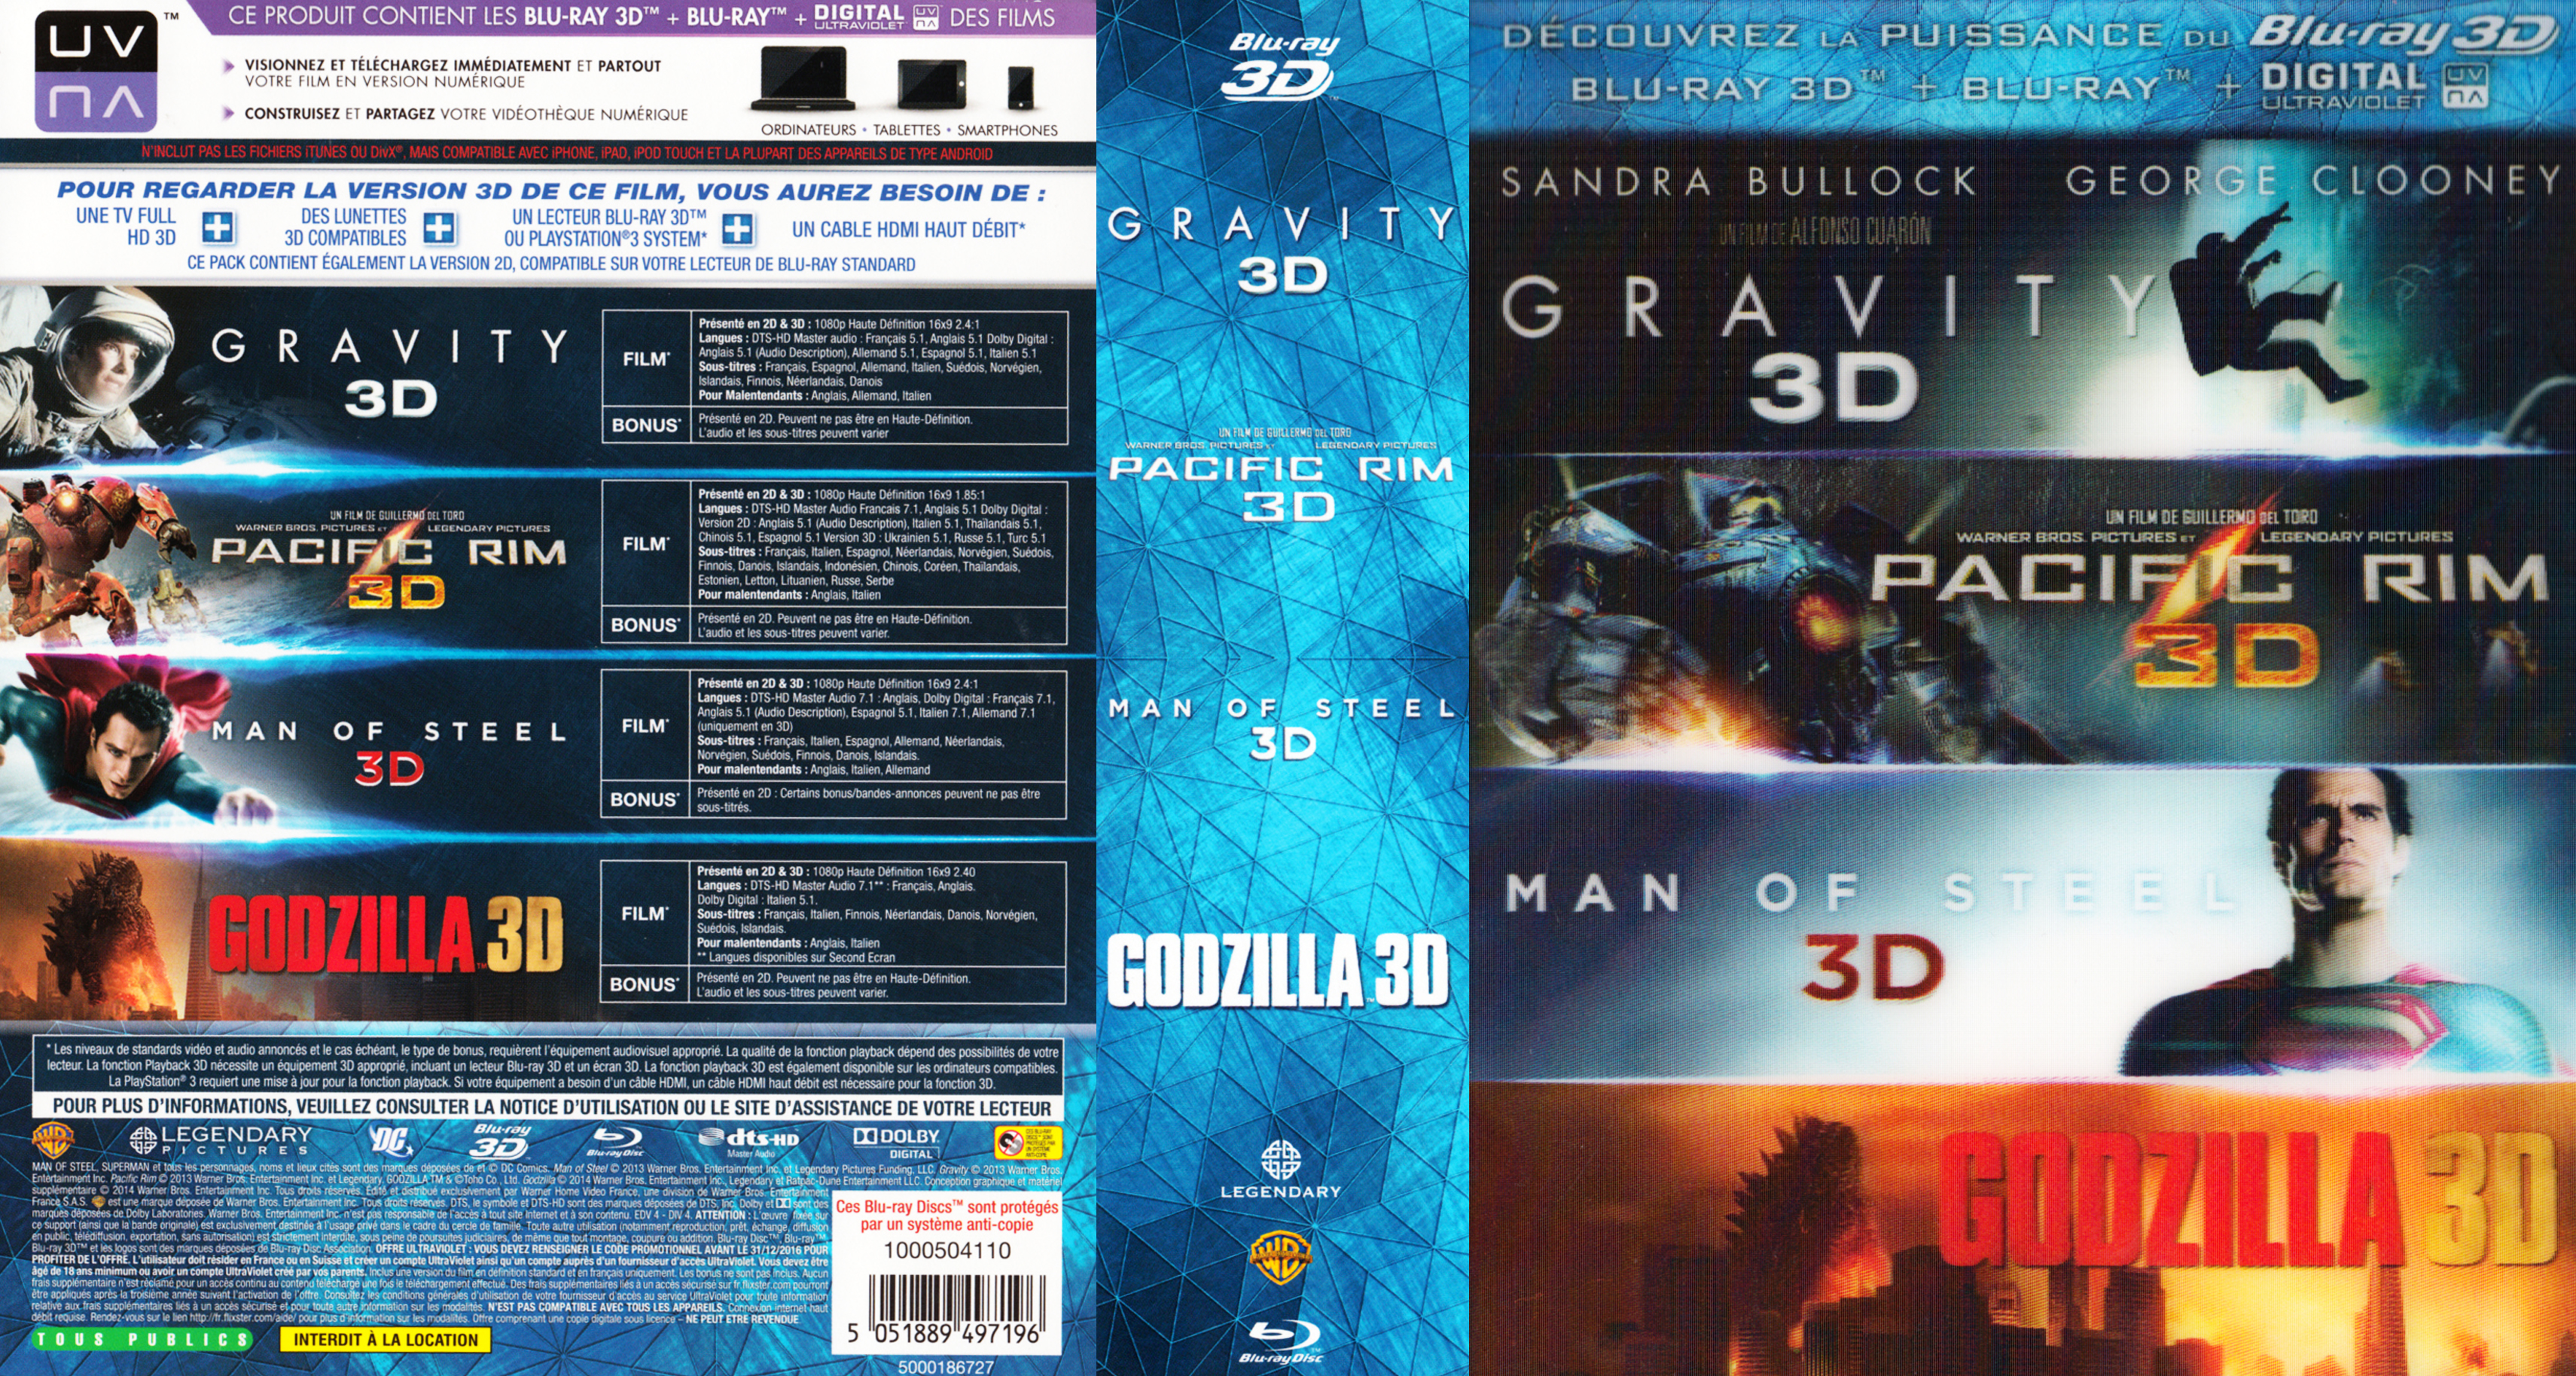 Jaquette DVD Gravity - Pacific Rim - Man of steel - Godzilla 3D COFFRET (BLU-RAY)